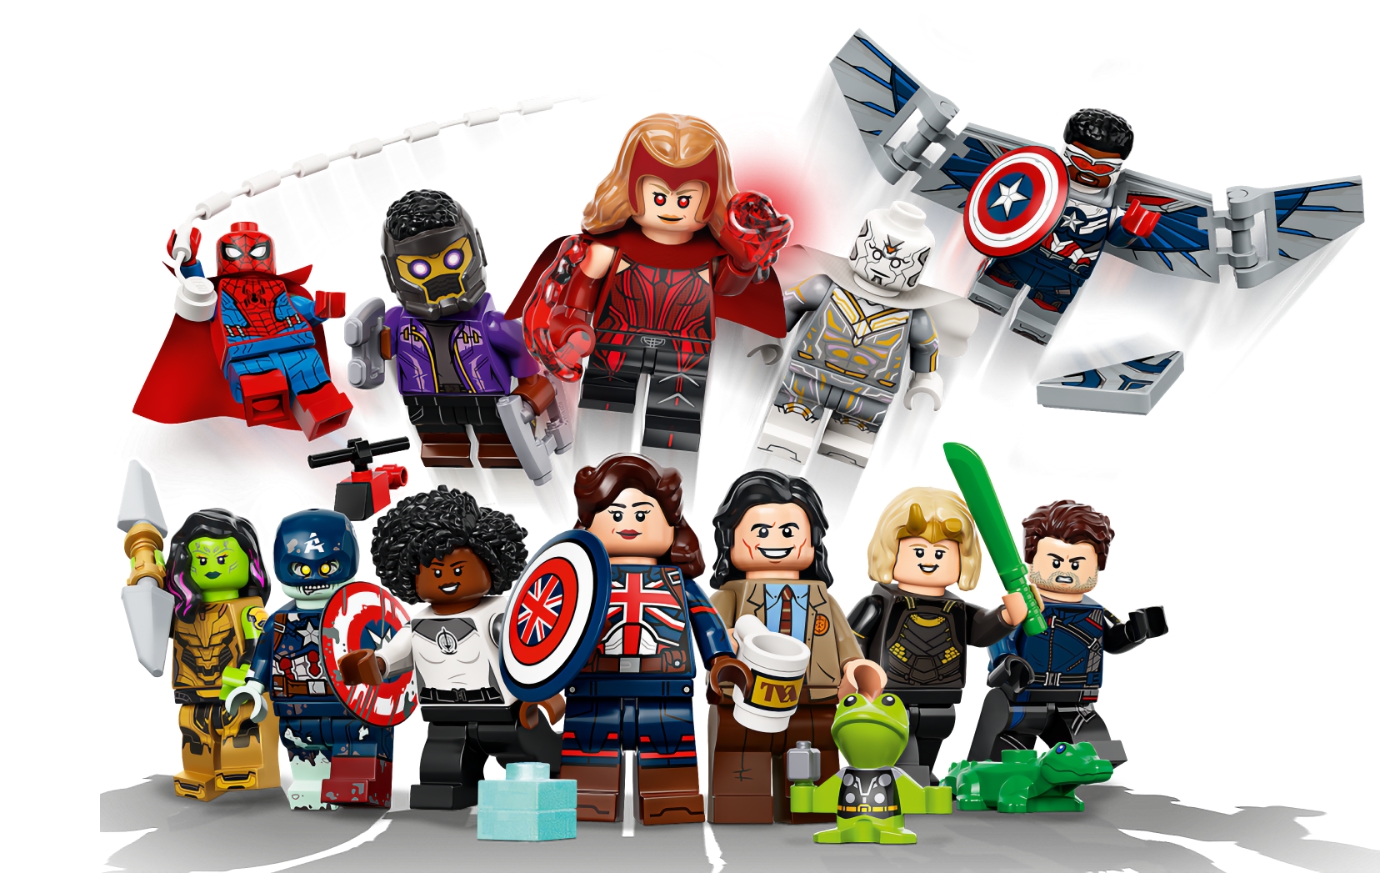 LEGO zaprezentowało minifigurki postaci z seriali Marvela "WandaVision", "Loki", "Sokół i Zimowy Żołnierz" oraz "Co by było, gdyby...?